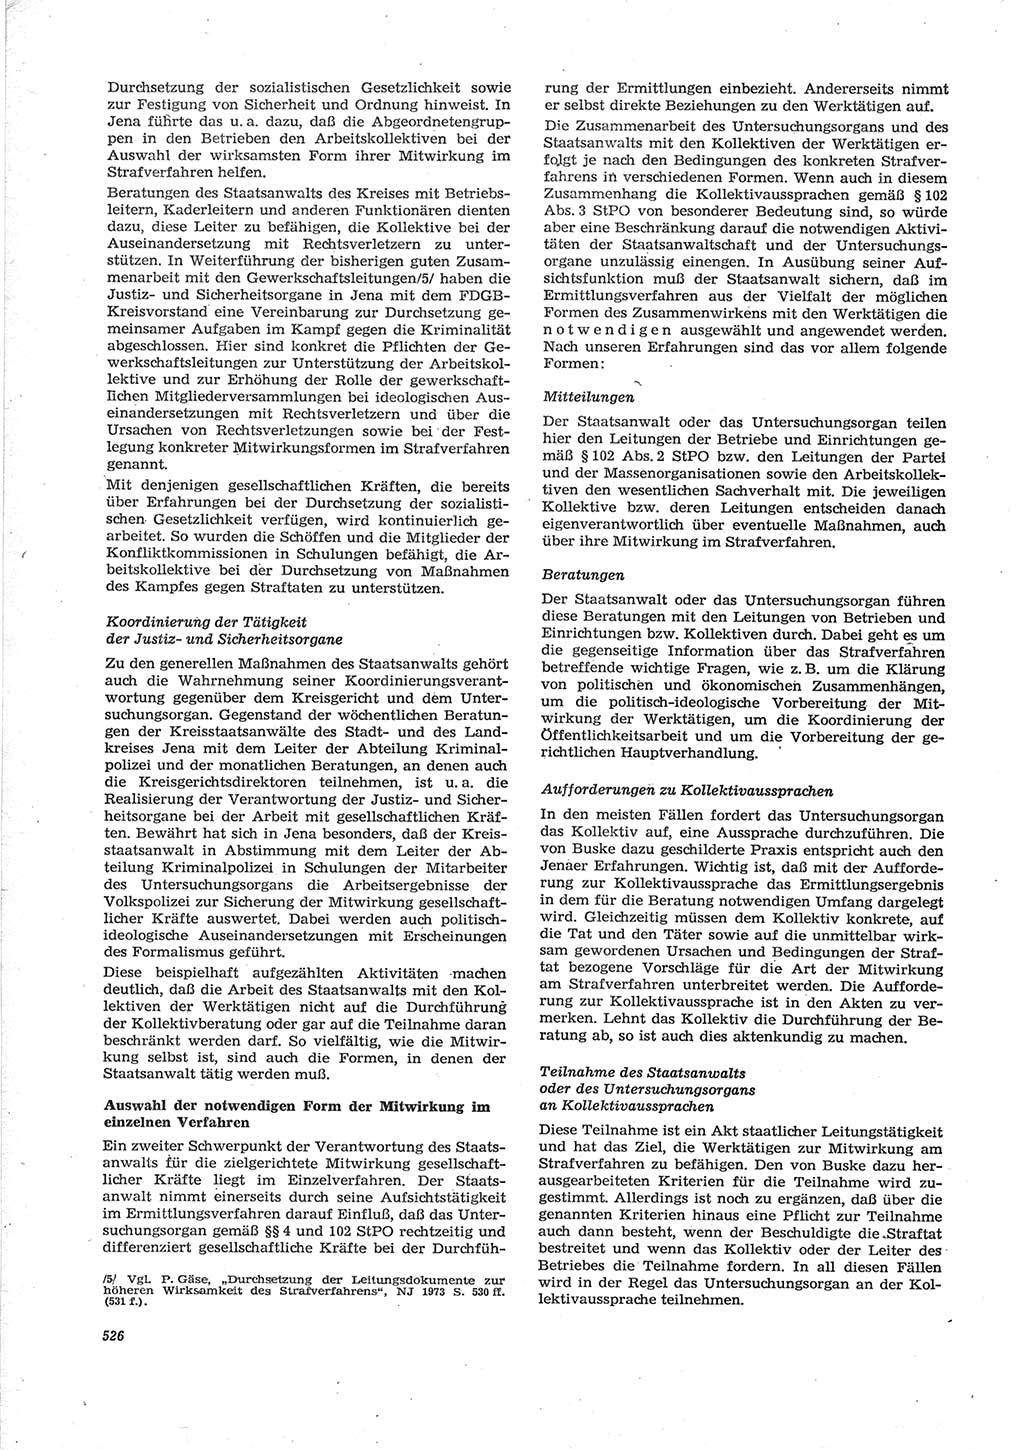 Neue Justiz (NJ), Zeitschrift für Recht und Rechtswissenschaft [Deutsche Demokratische Republik (DDR)], 28. Jahrgang 1974, Seite 526 (NJ DDR 1974, S. 526)